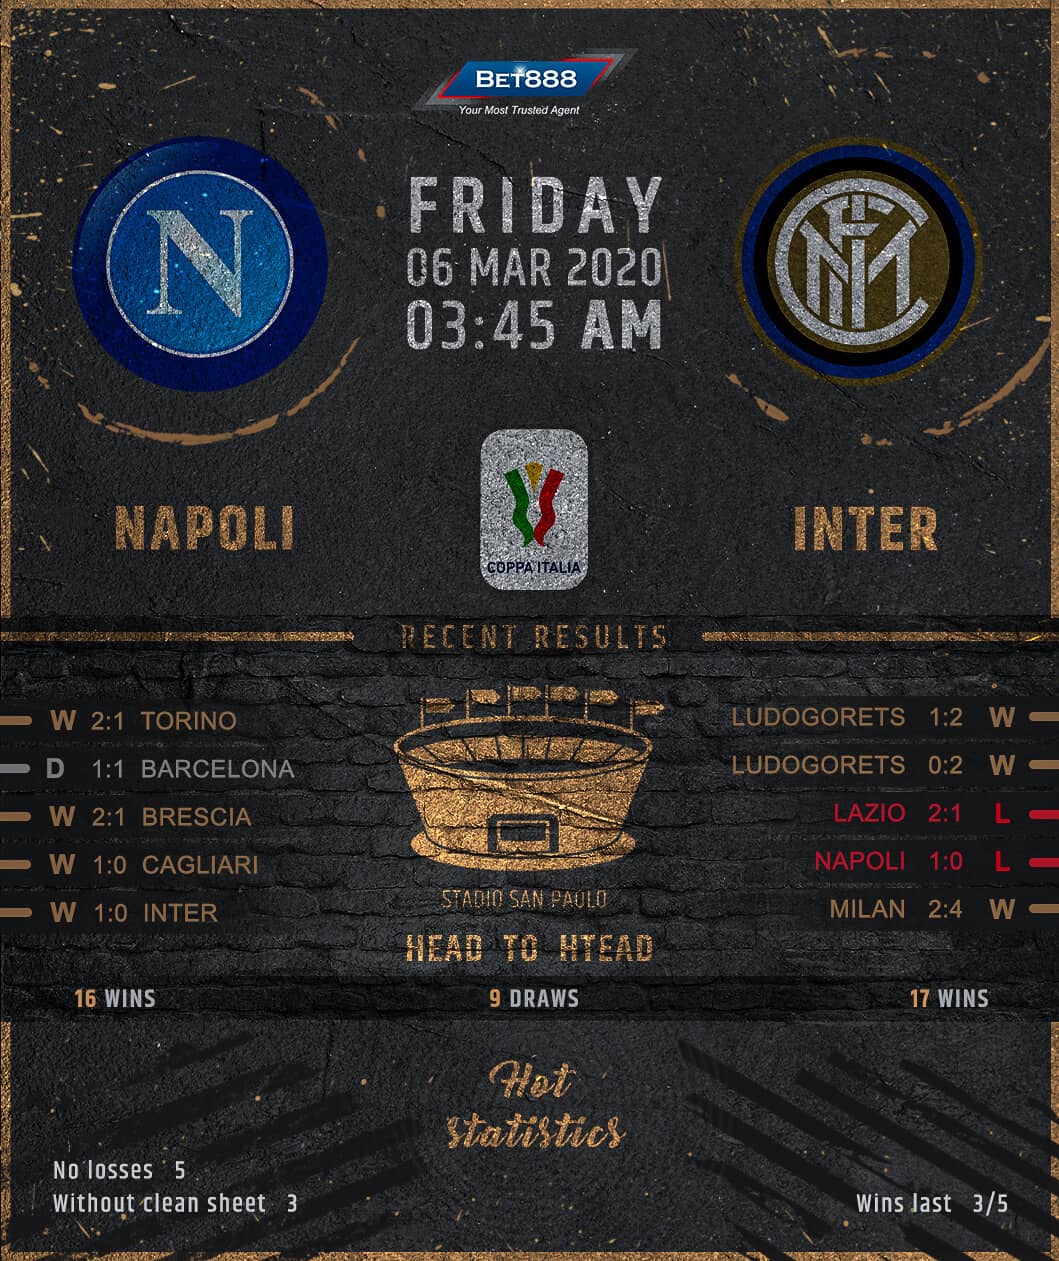 Napoli vs Internazionale﻿ 06/03/20